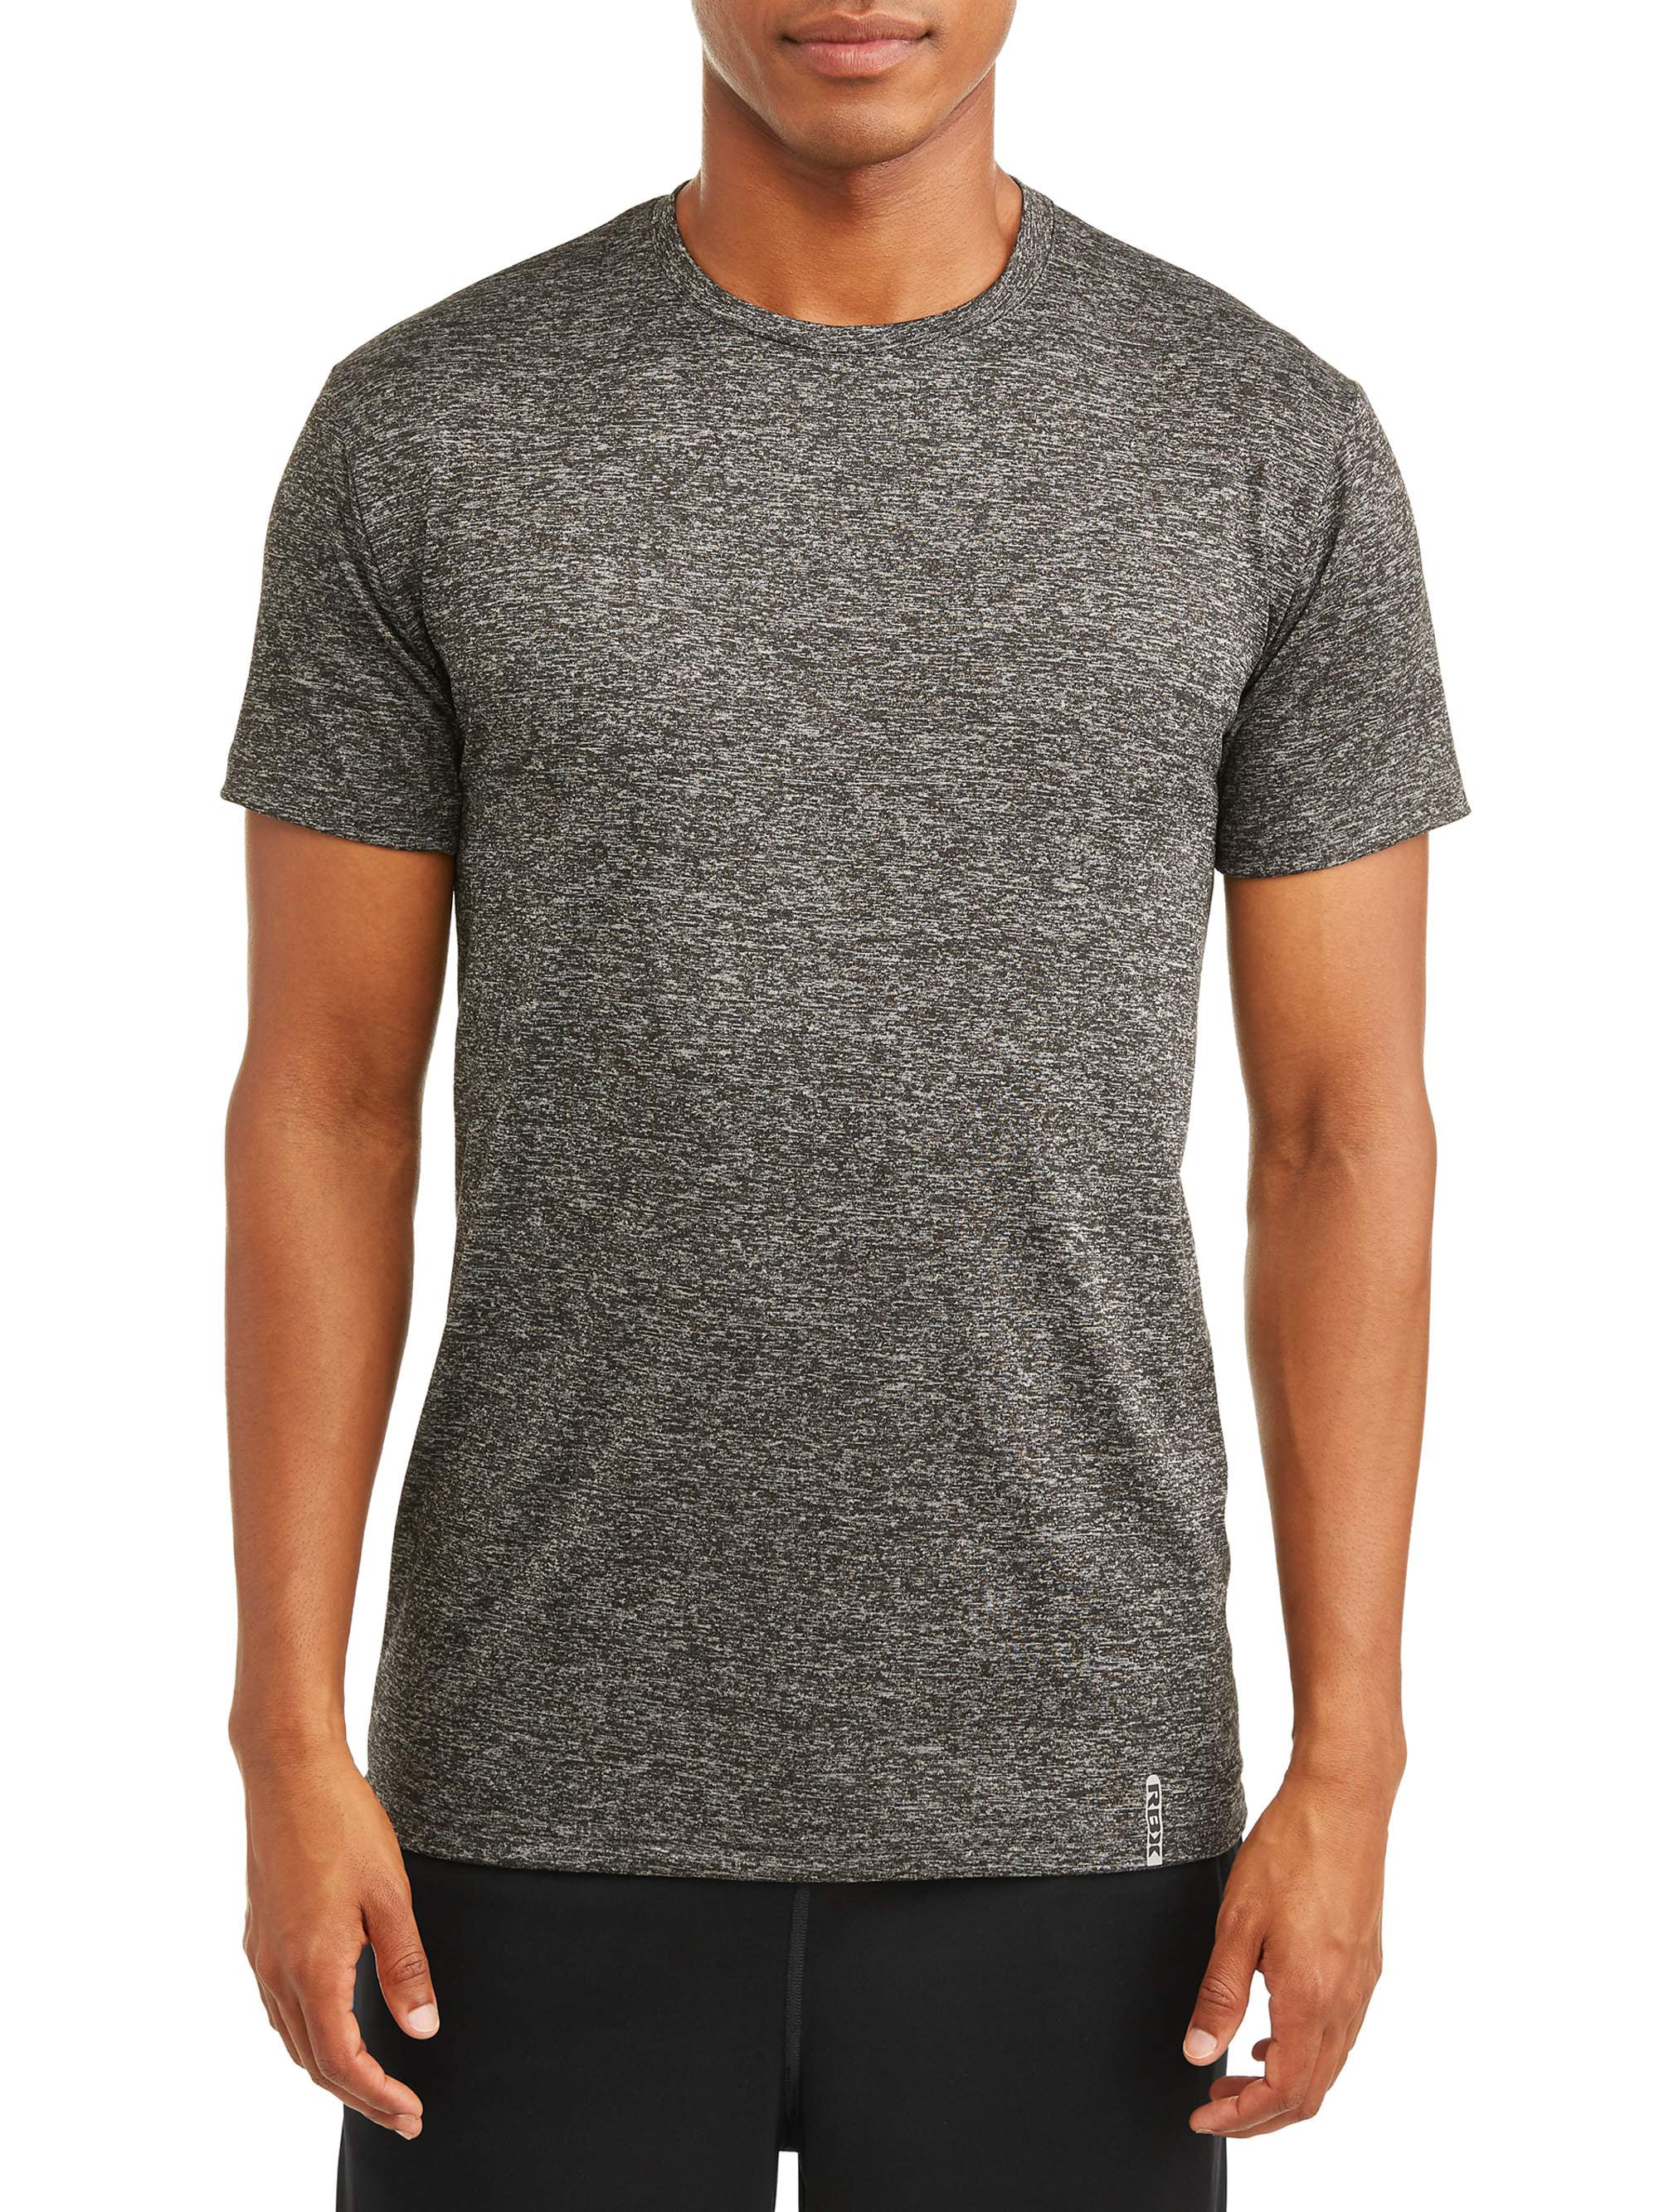 RBX Men's Ultra Soft Sleepwear T-Shirt